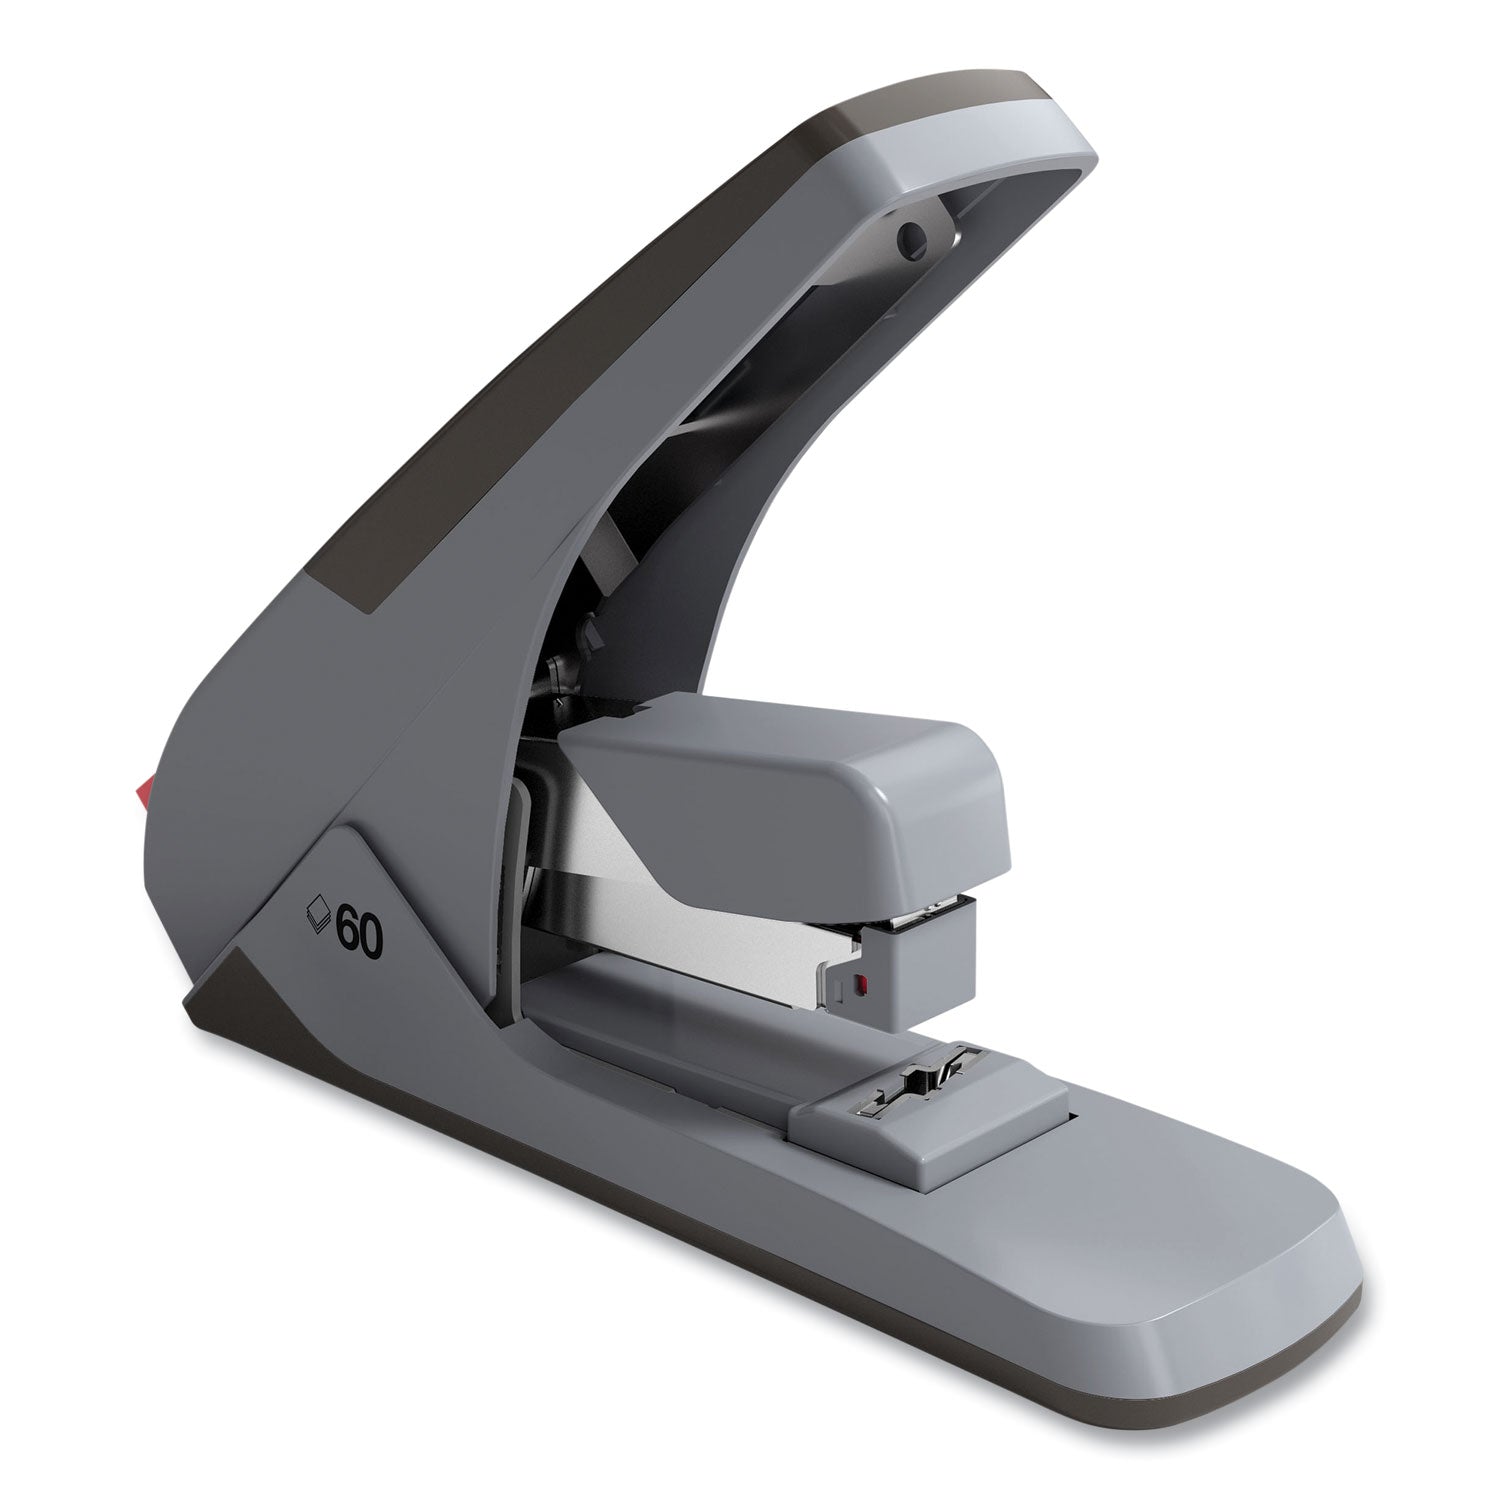 one-touch-desktop-stapler-60-or-25-sheet-capacity-gray-black_tud331288 - 1